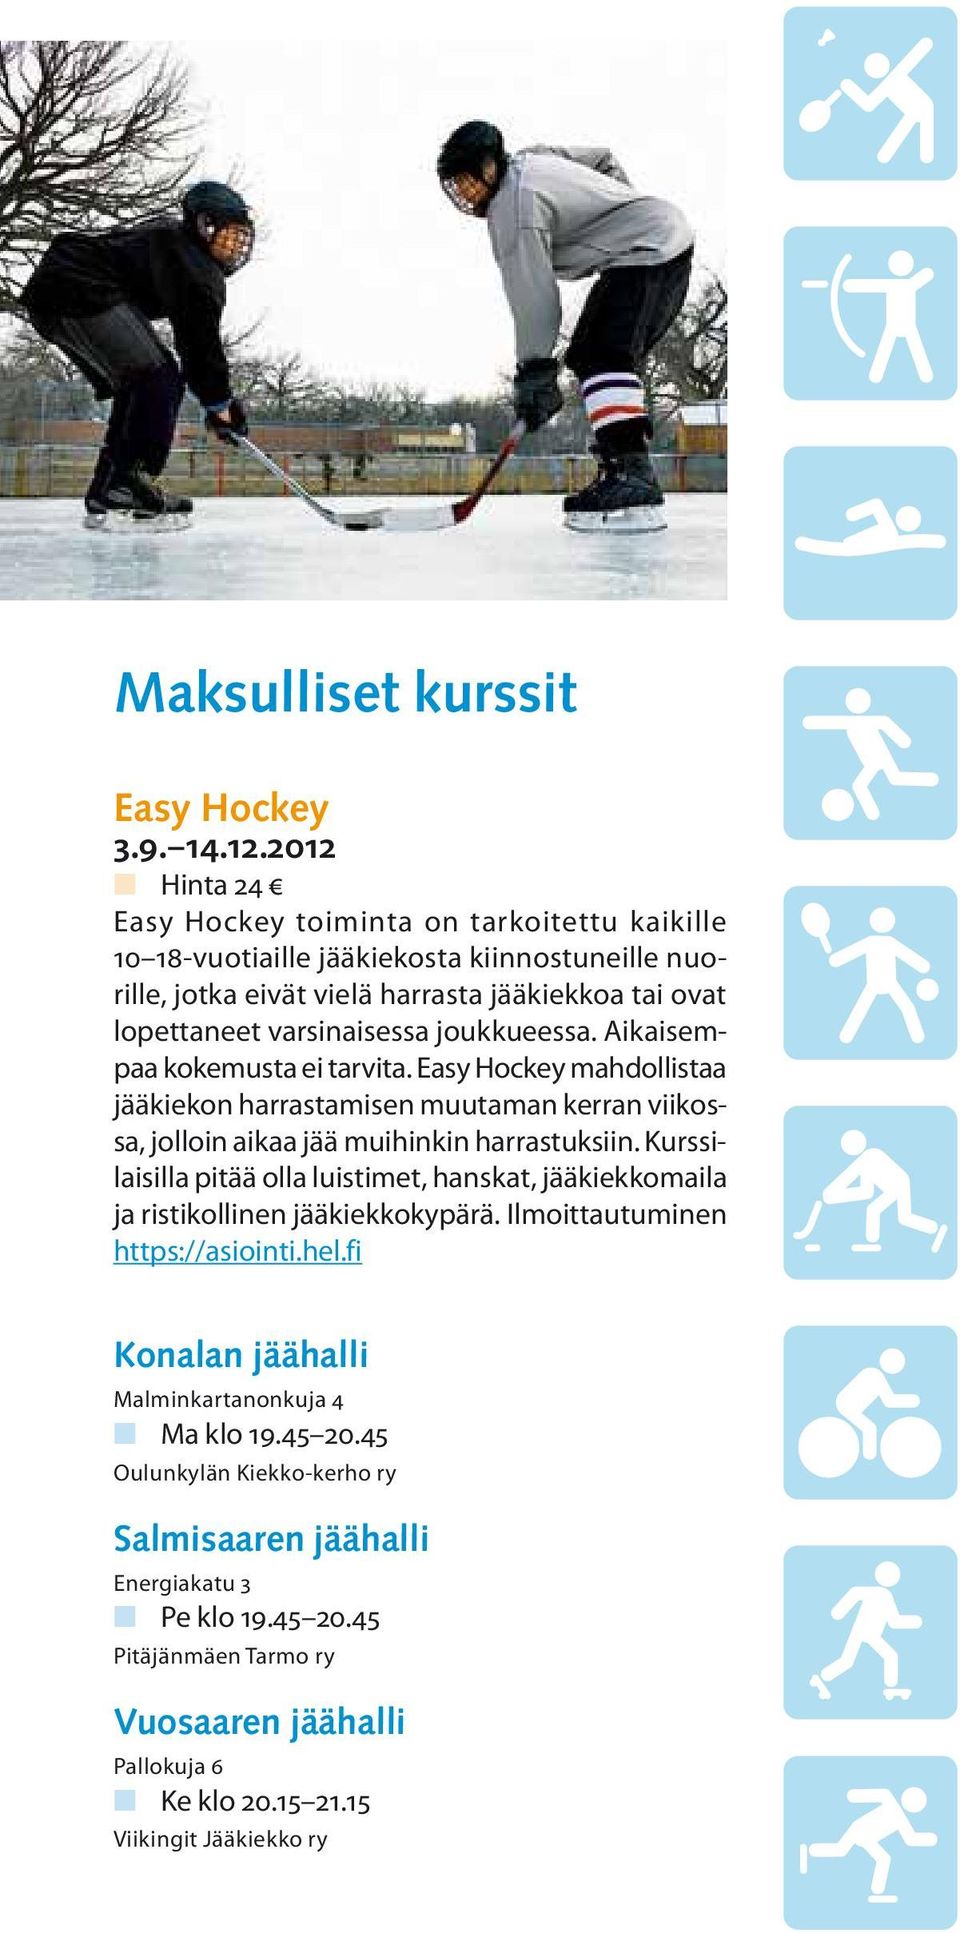 joukkueessa. Aikaisempaa kokemusta ei tarvita. Easy Hockey mahdollistaa jääkiekon harrastamisen muutaman kerran viikossa, jolloin aikaa jää muihinkin harrastuksiin.